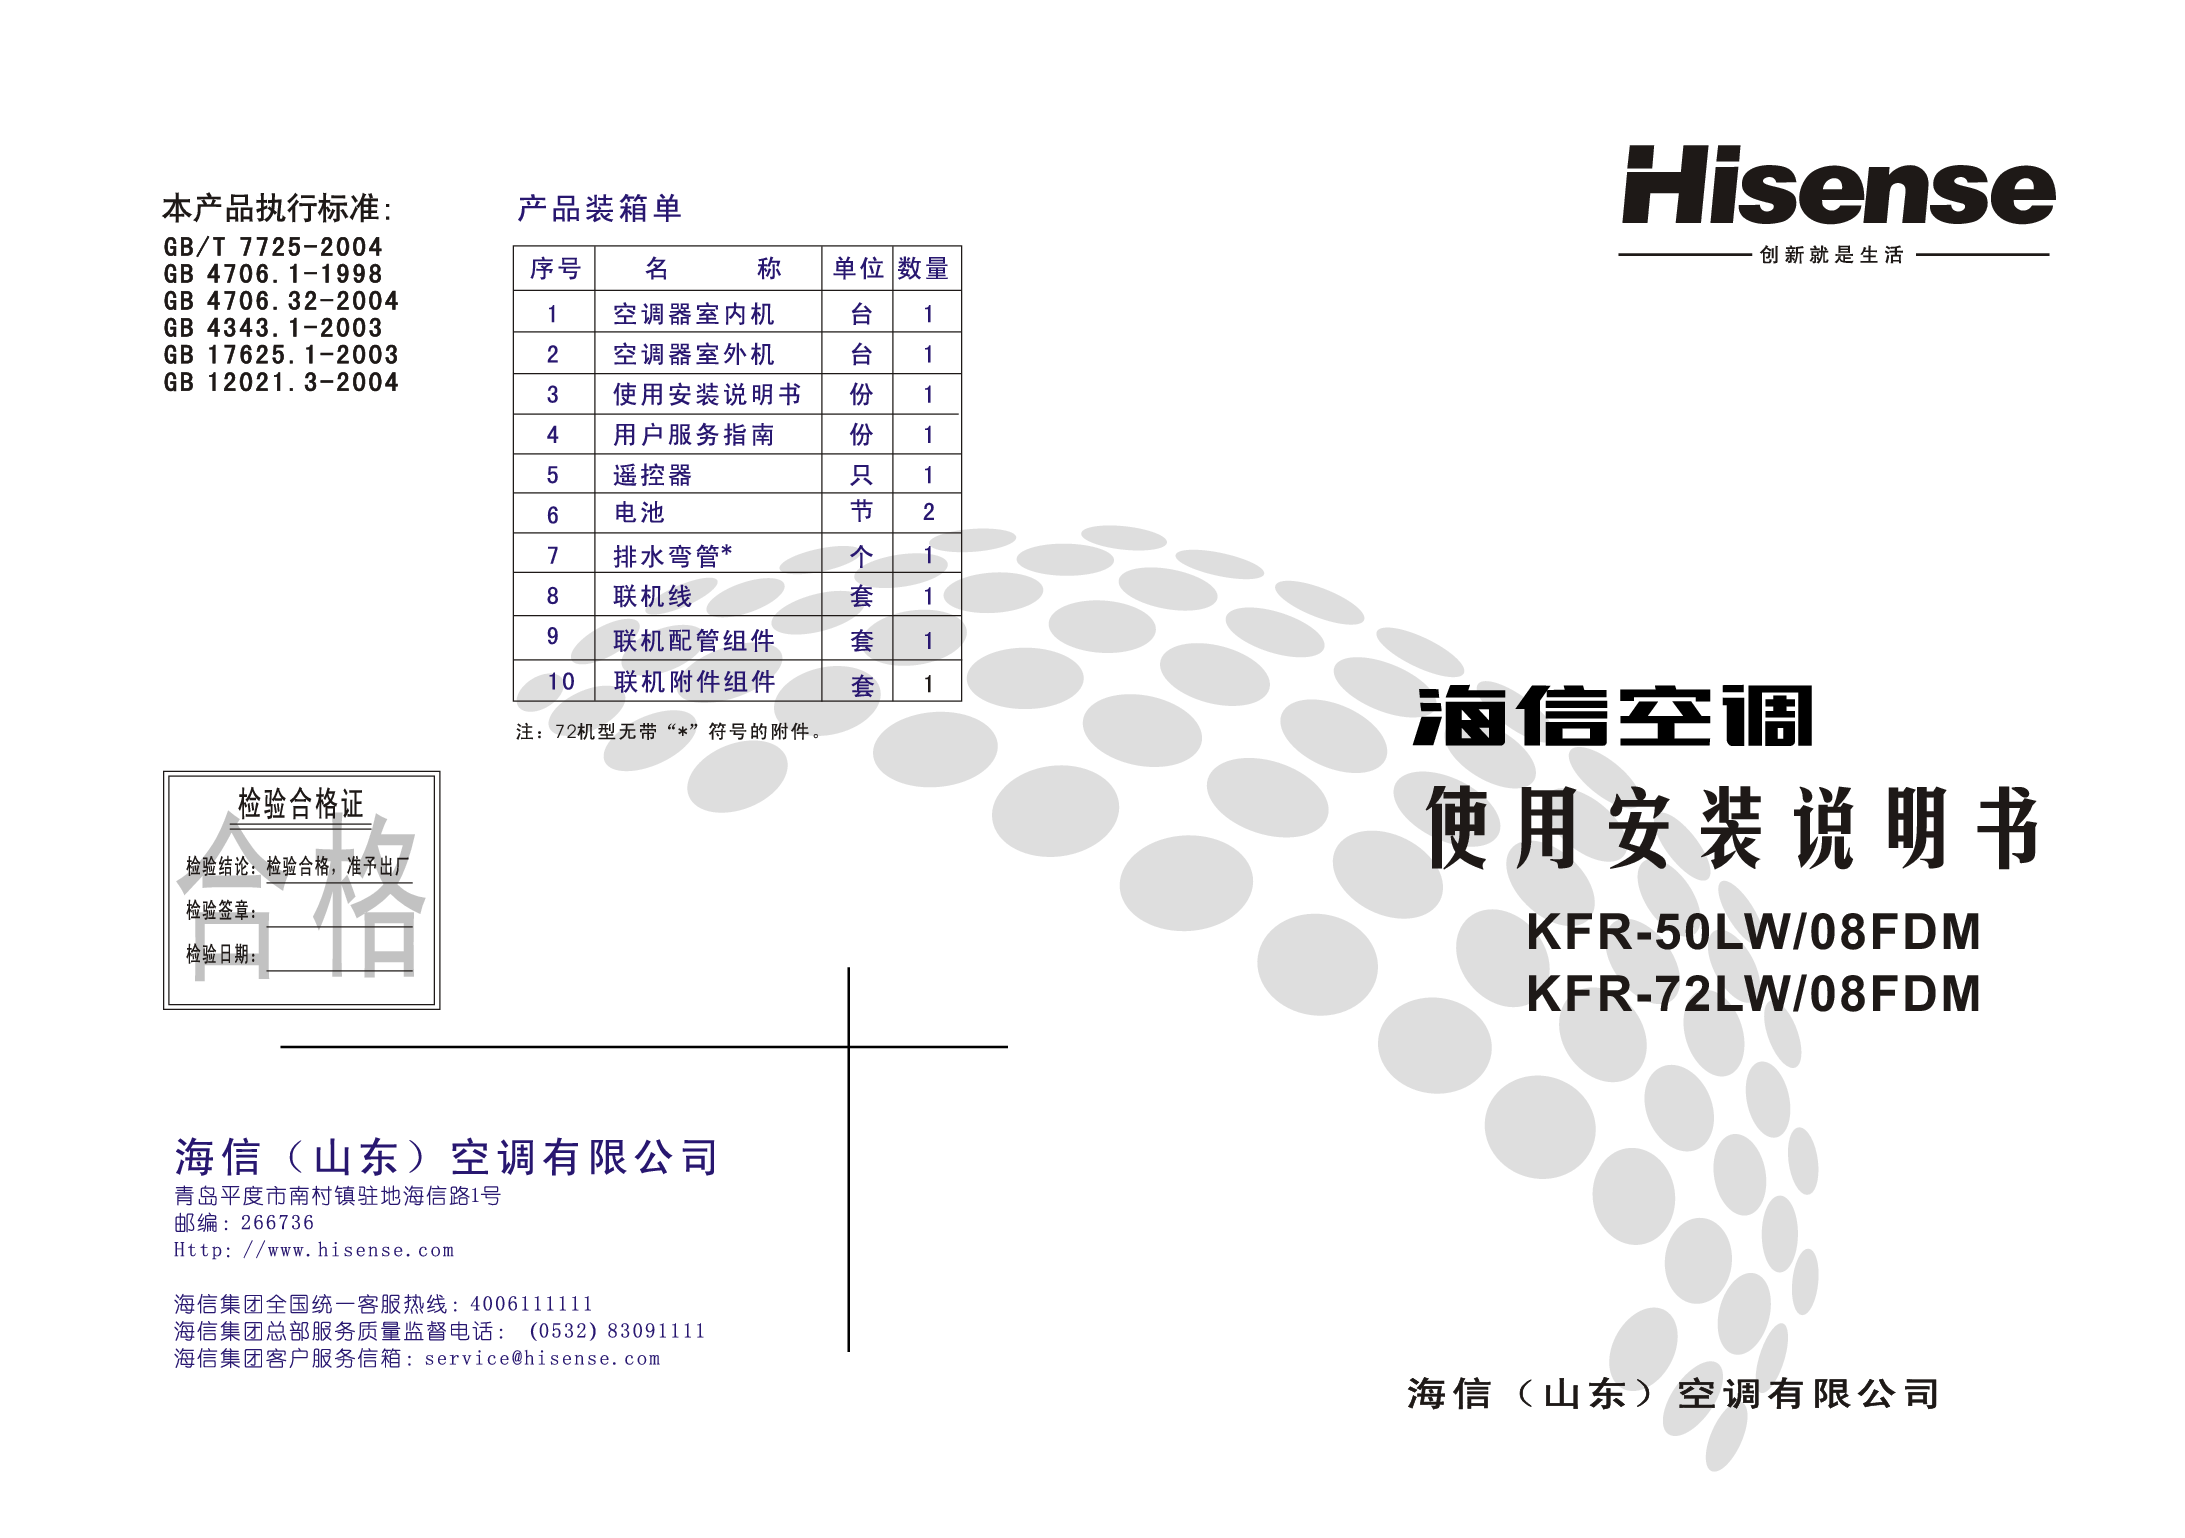 海信 Hisense KFR-50LW/08FDM 使用说明书 封面